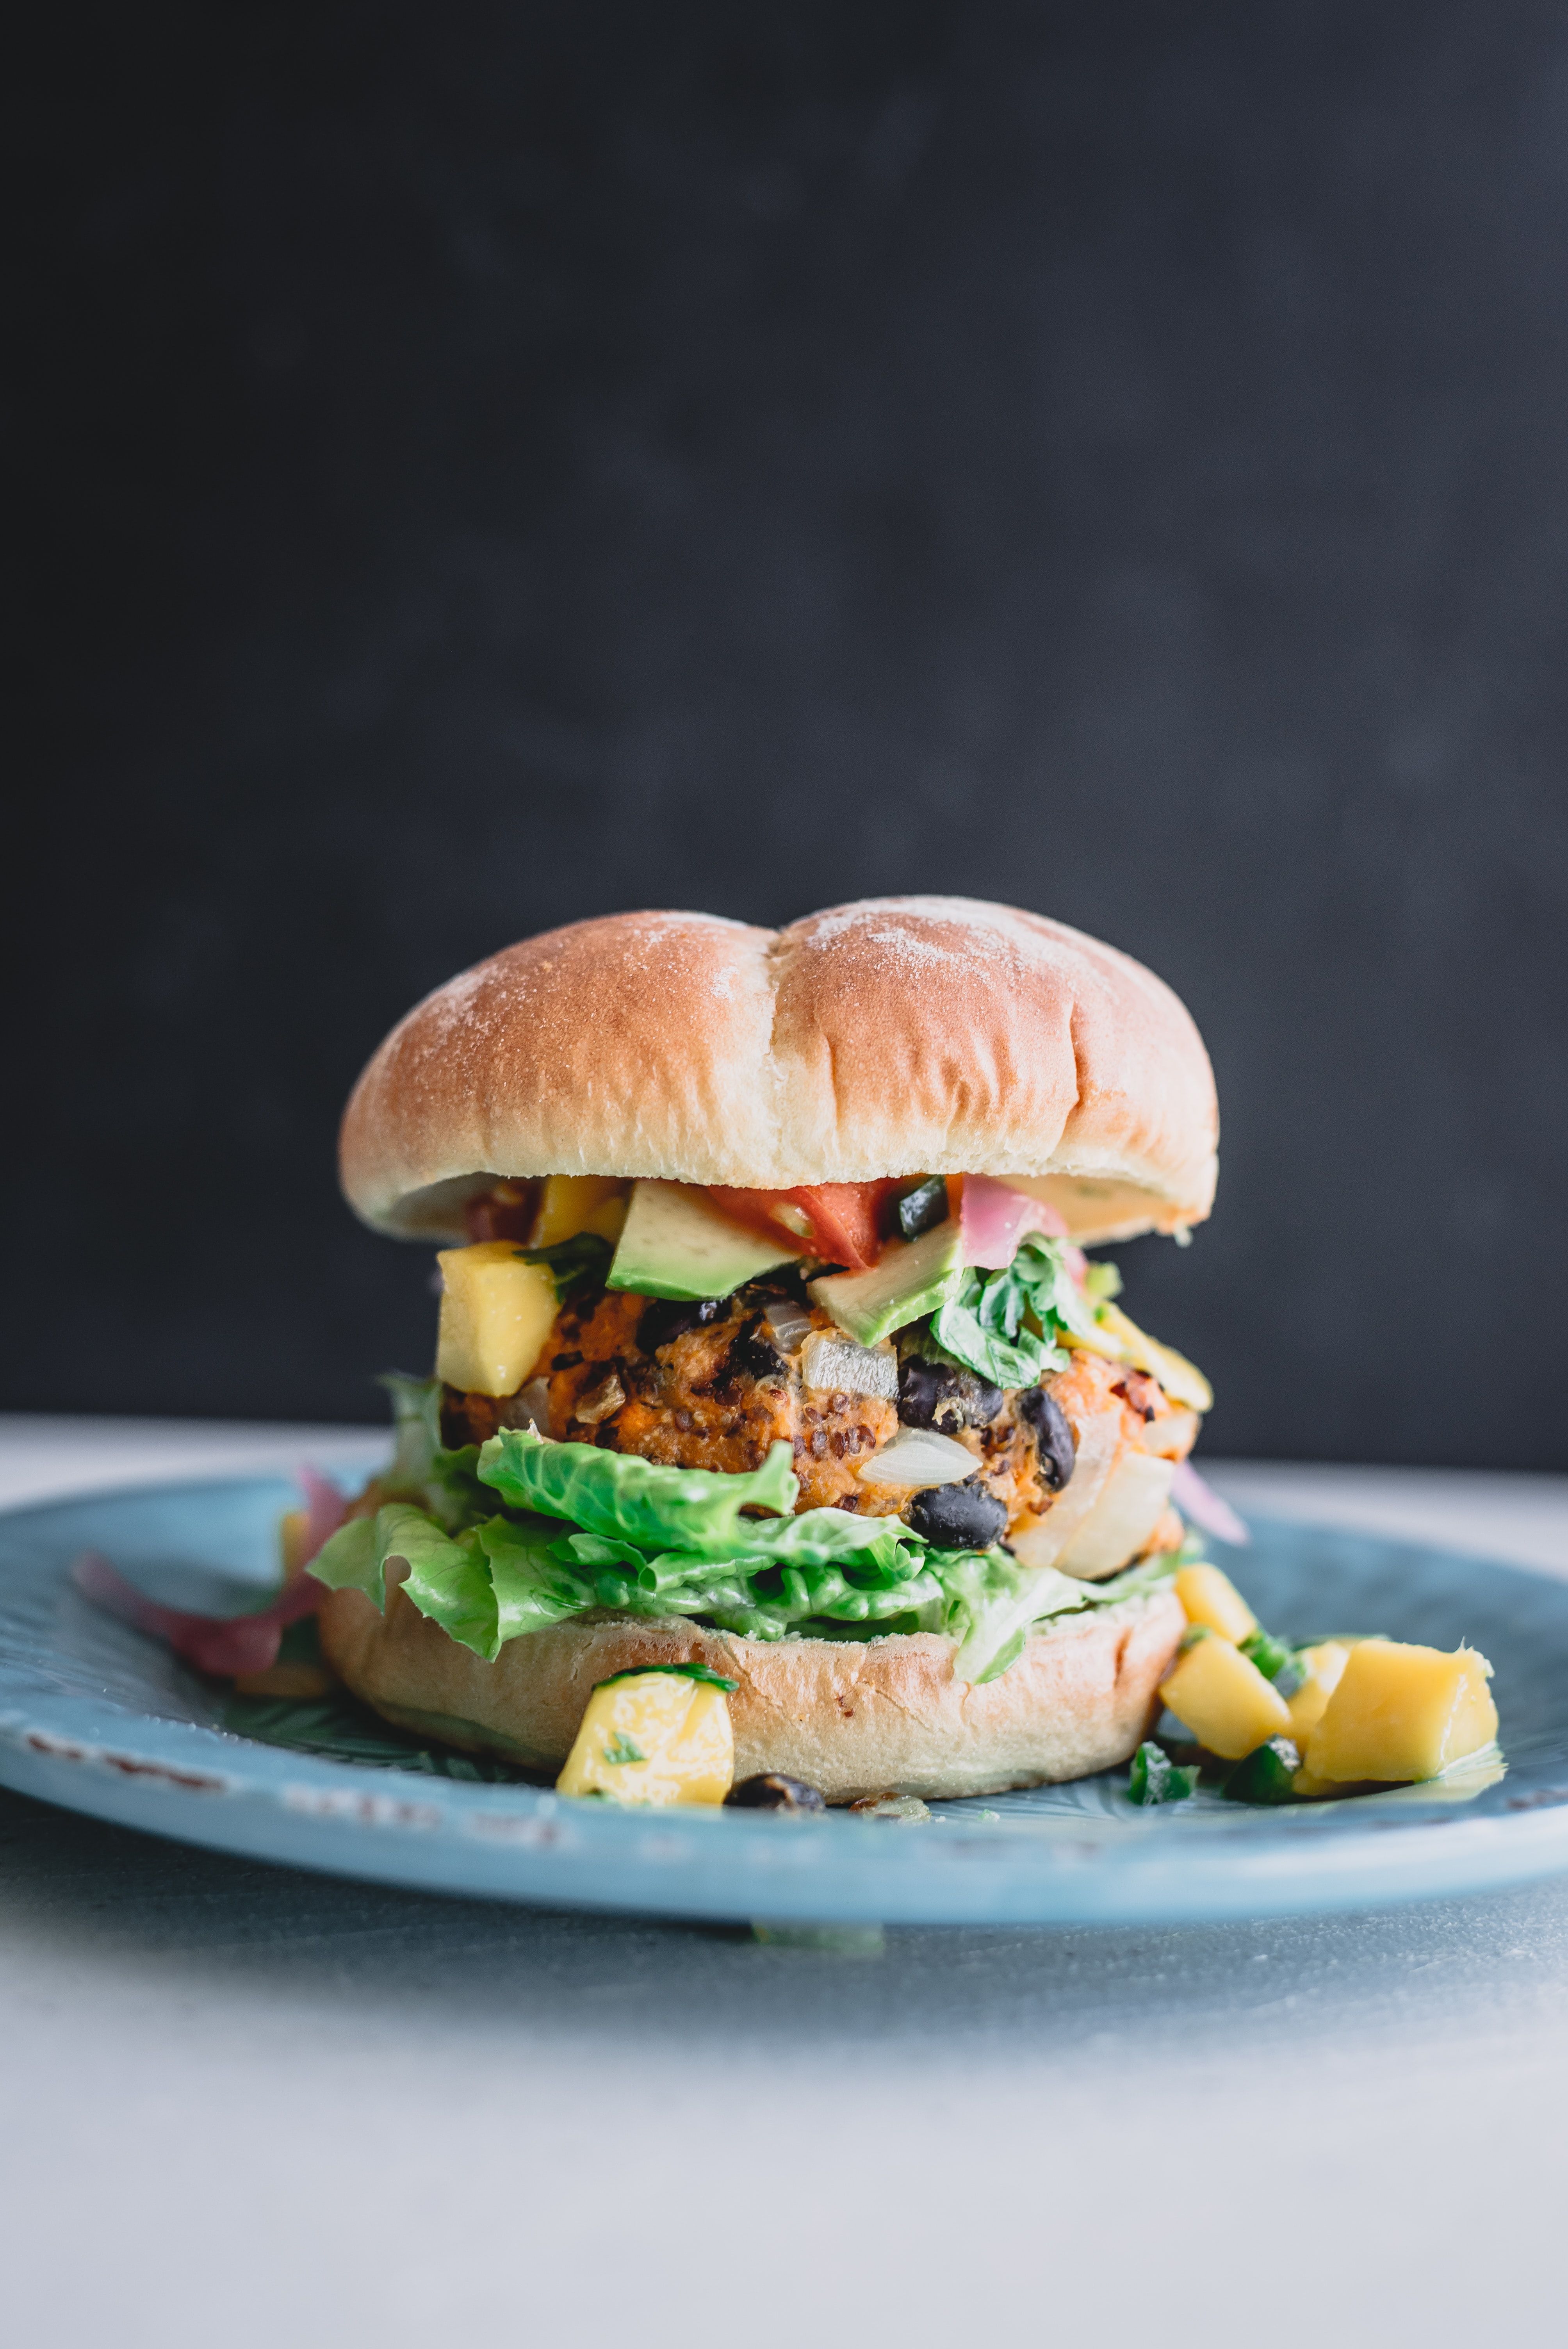 Polpette e burger vegetali confezionati: cosa contengono davvero?  L'indagine francese - greenMe